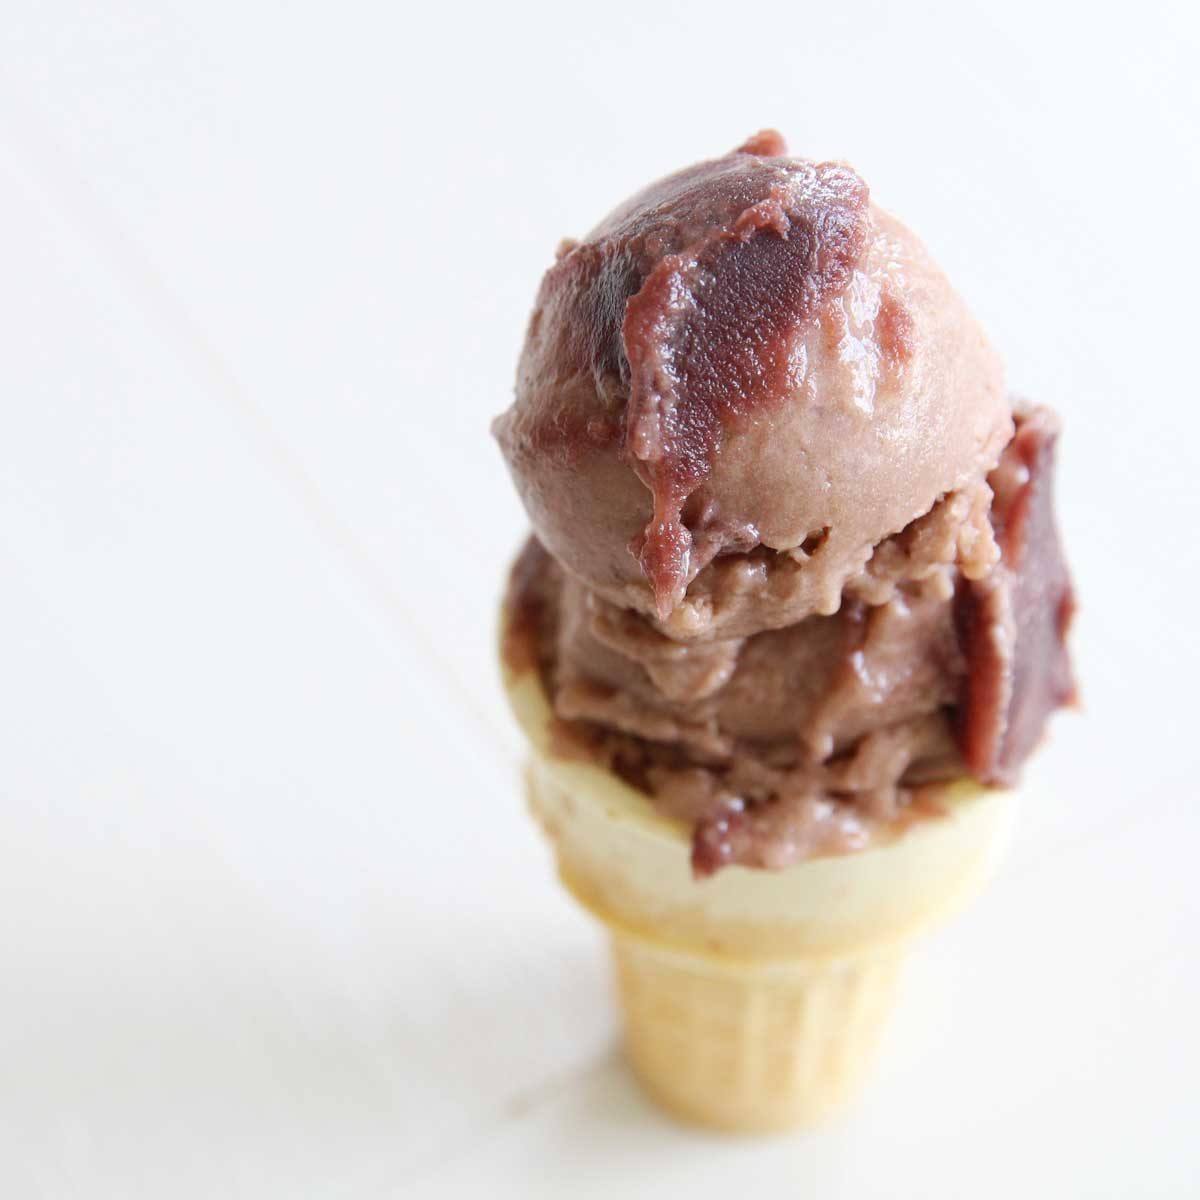 sweet adzuki red bean ice cream in a cone